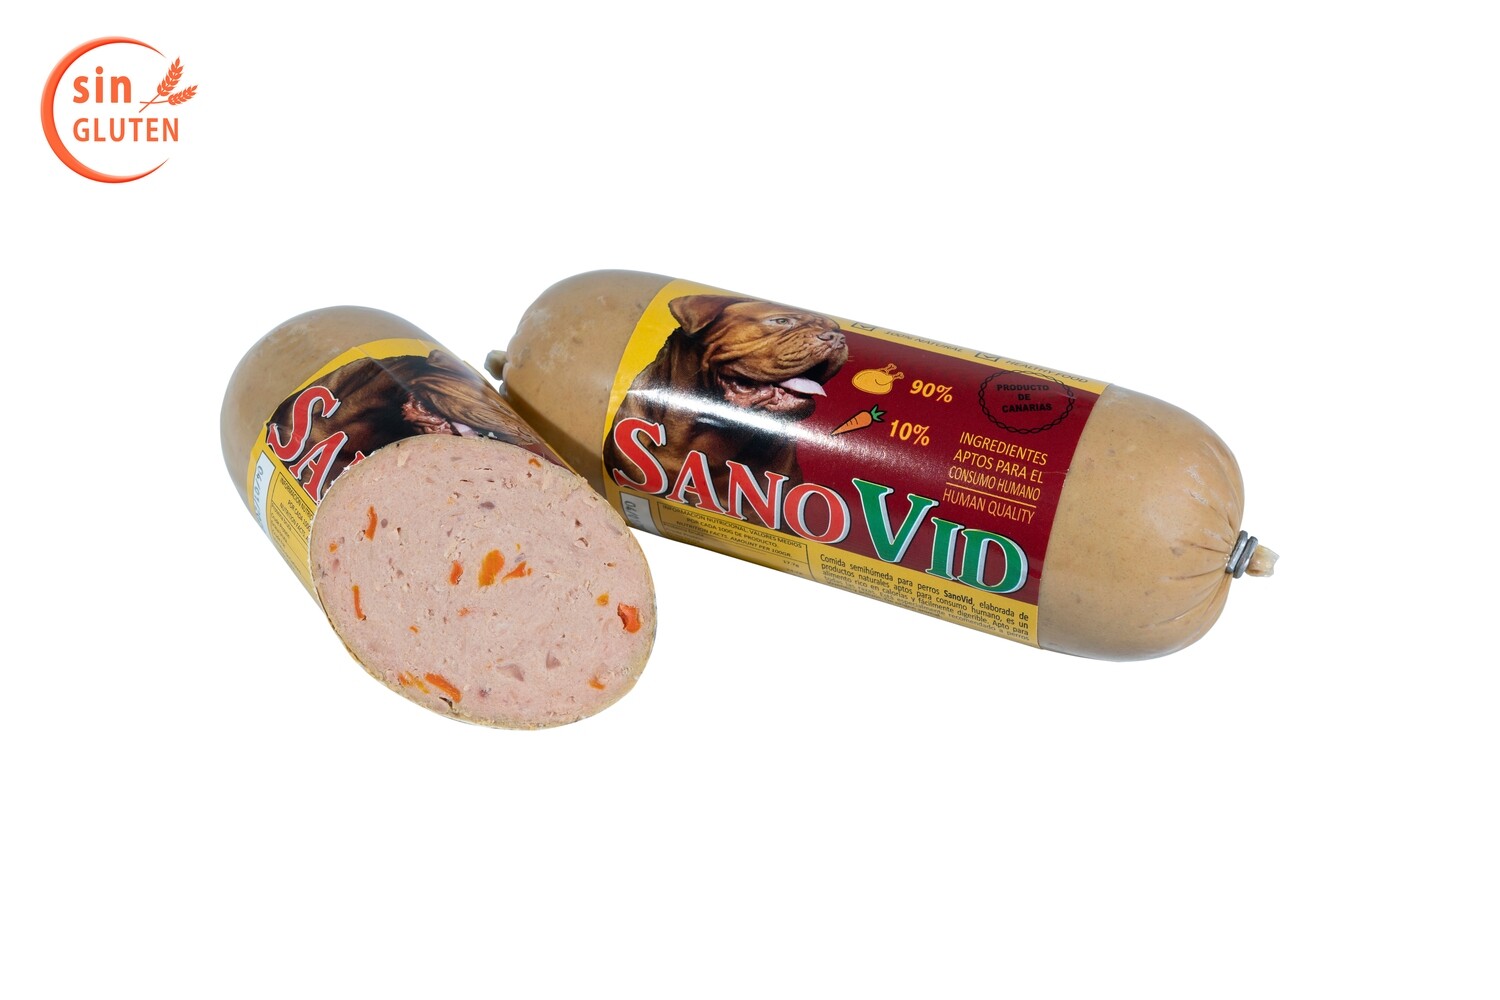 Sanovid (pollo y zanahoria), salchicha 600 gr. en caja de 10 ud.